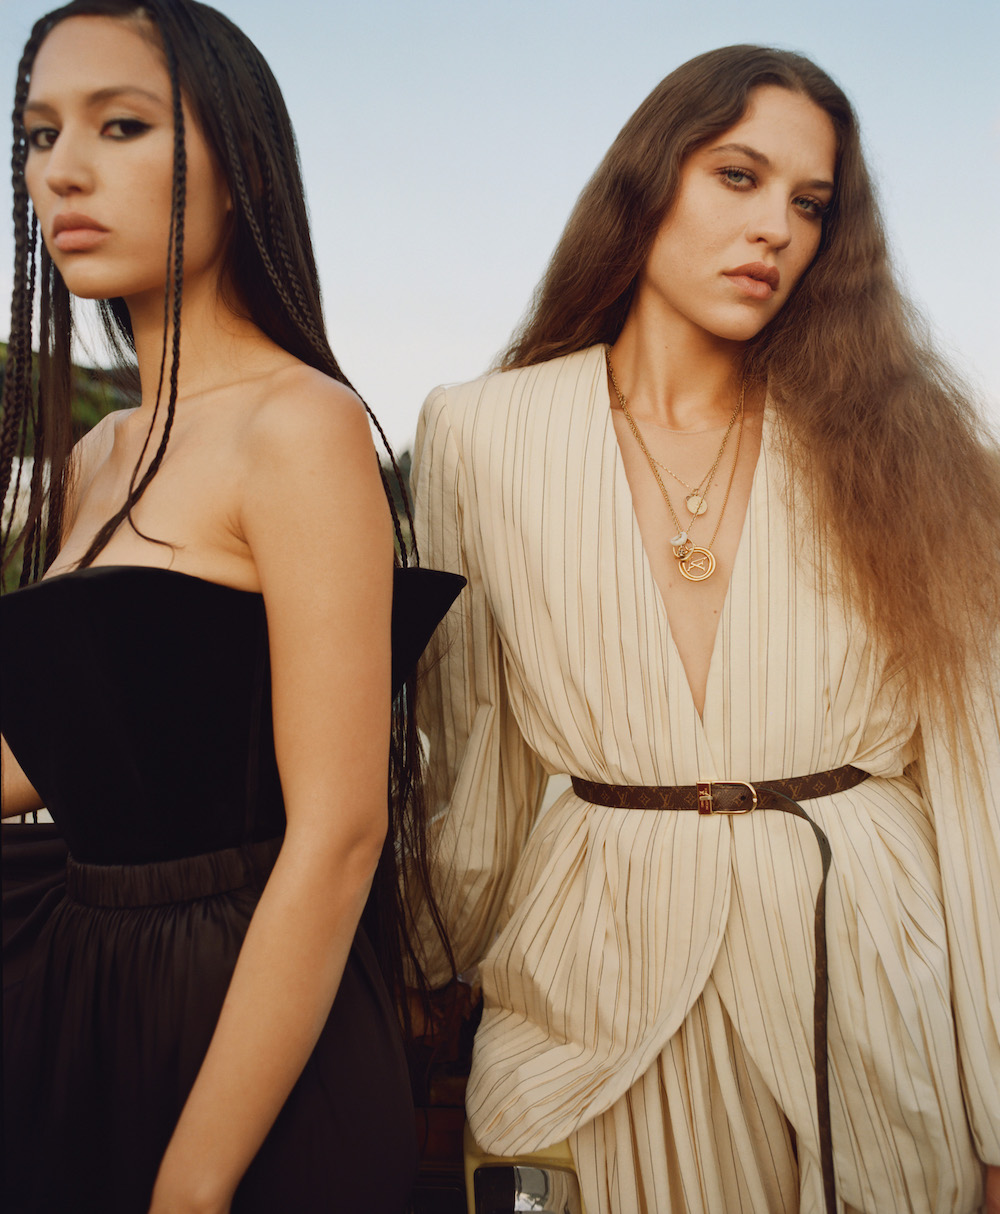 Mona & Klara Hit the Beach in Louis Vuitton 'LV Escale' Campaign